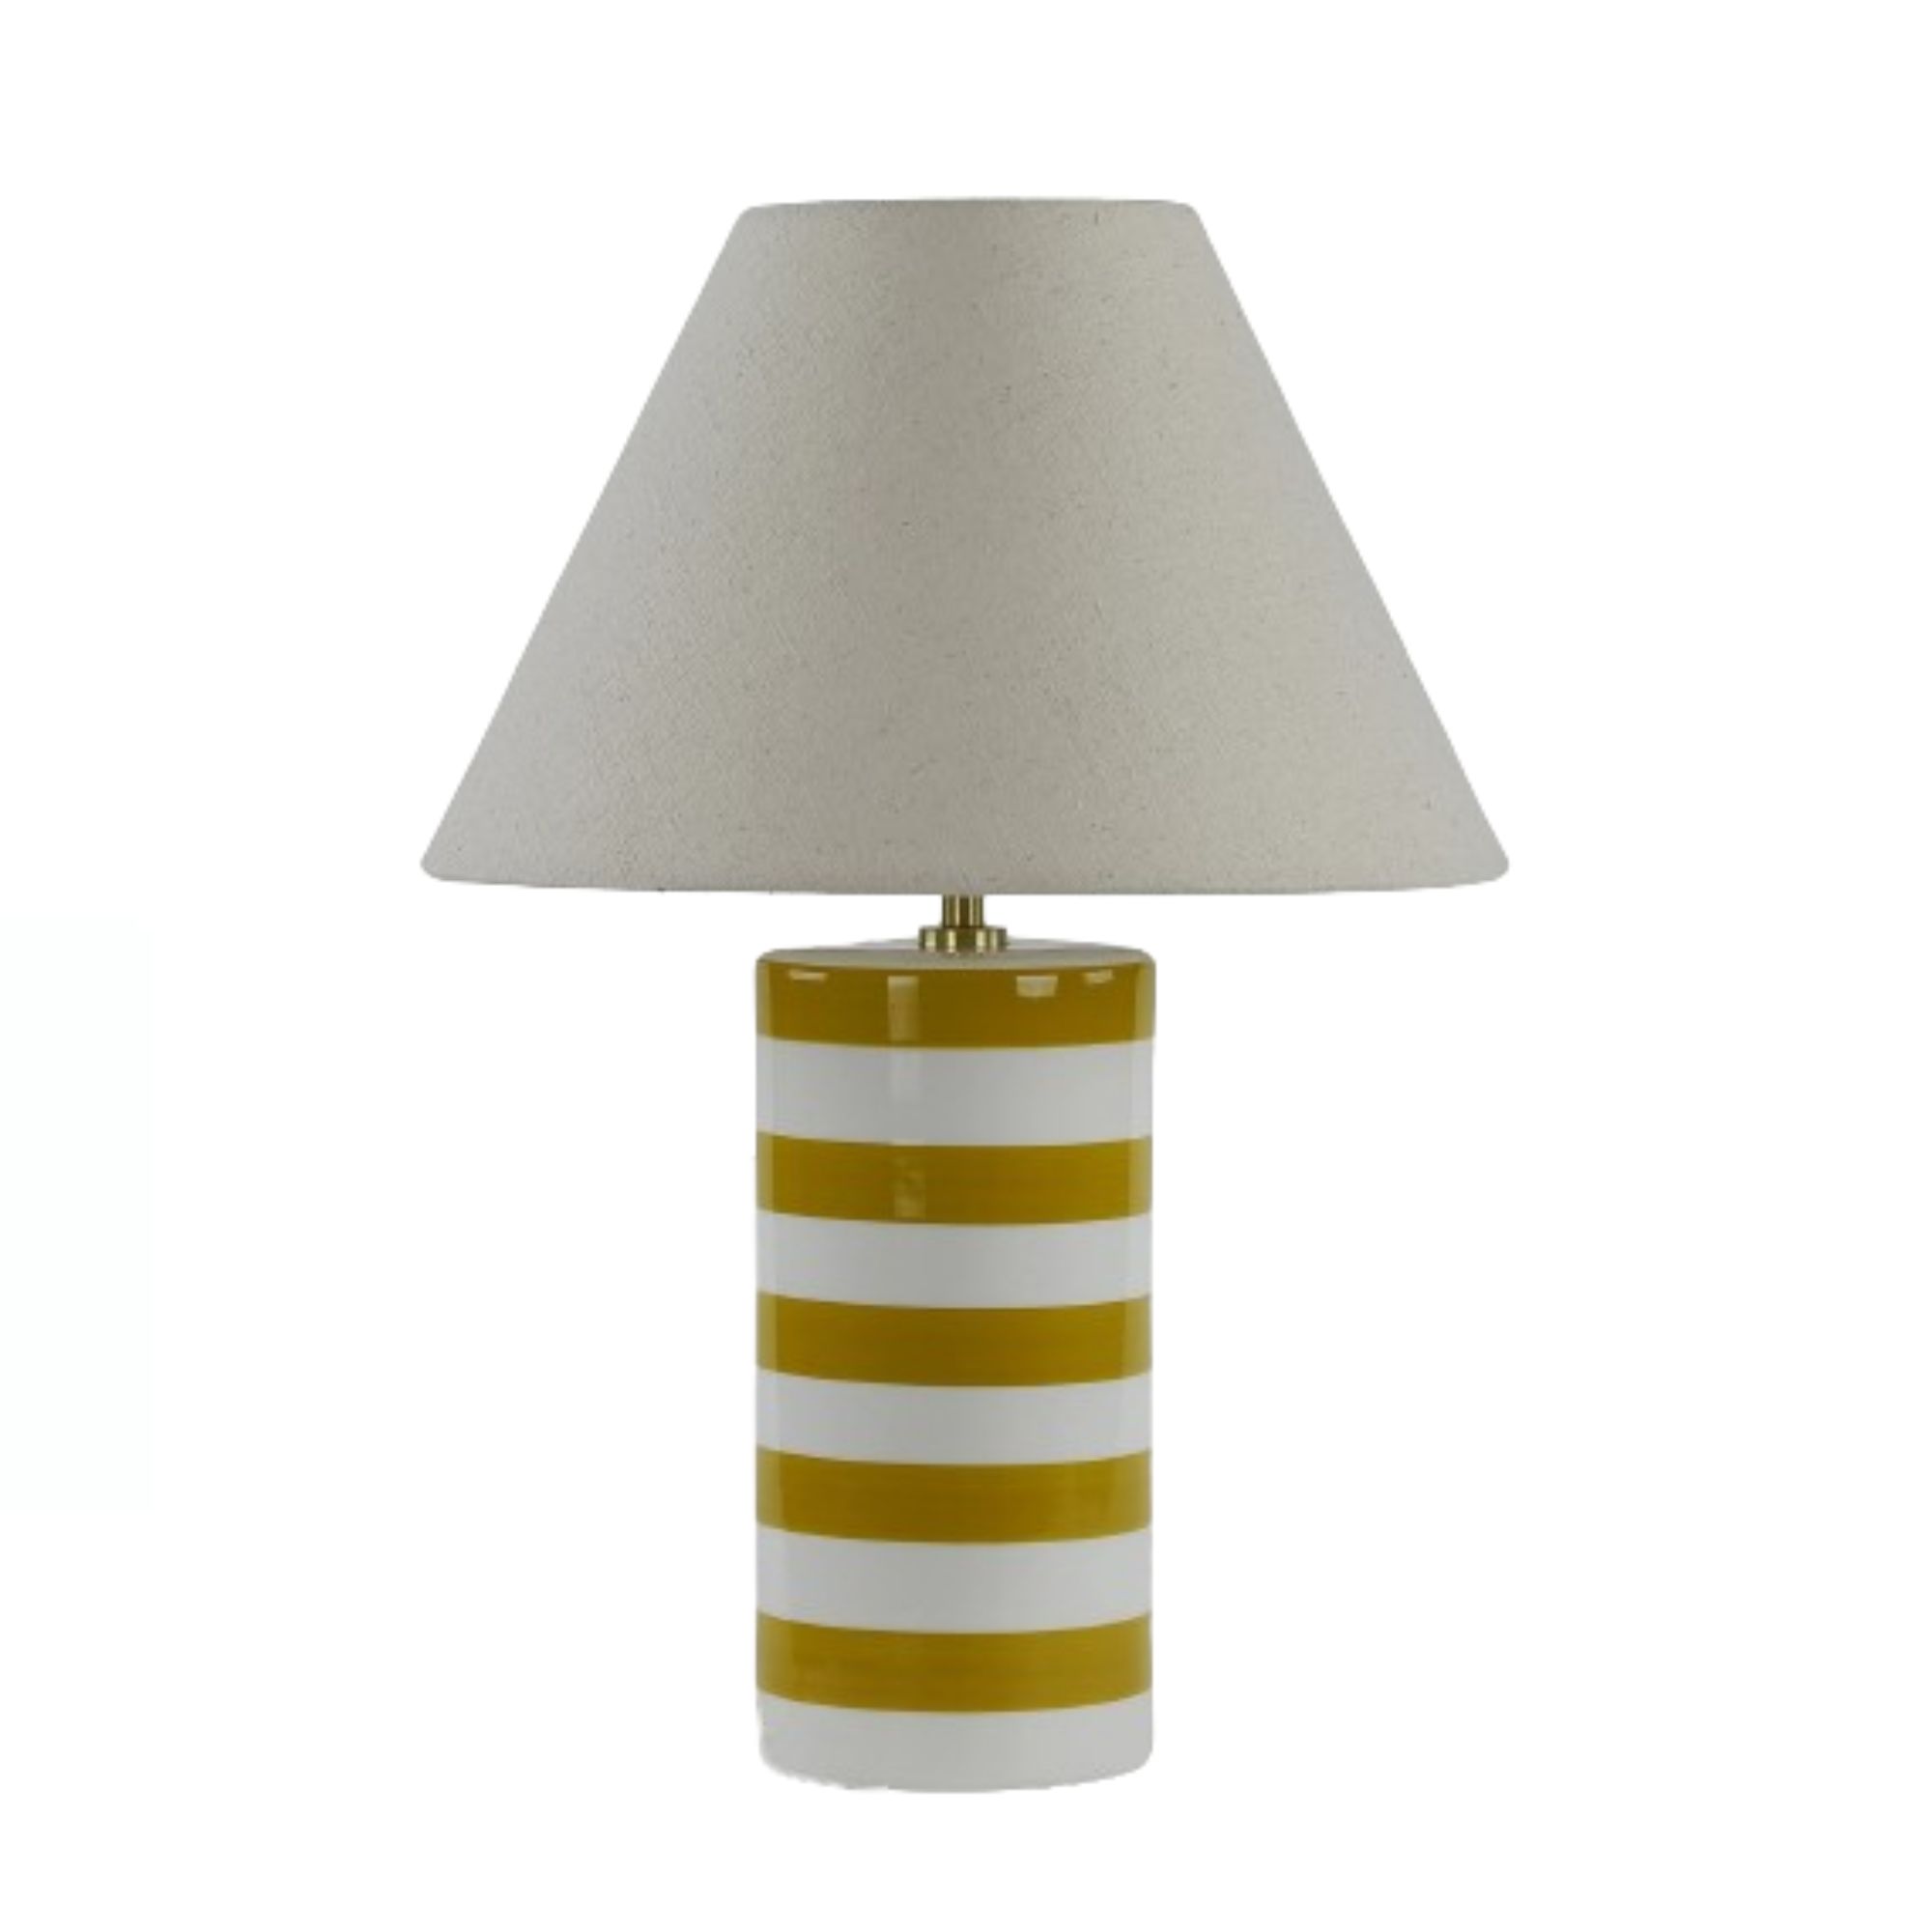 Oti table lamp